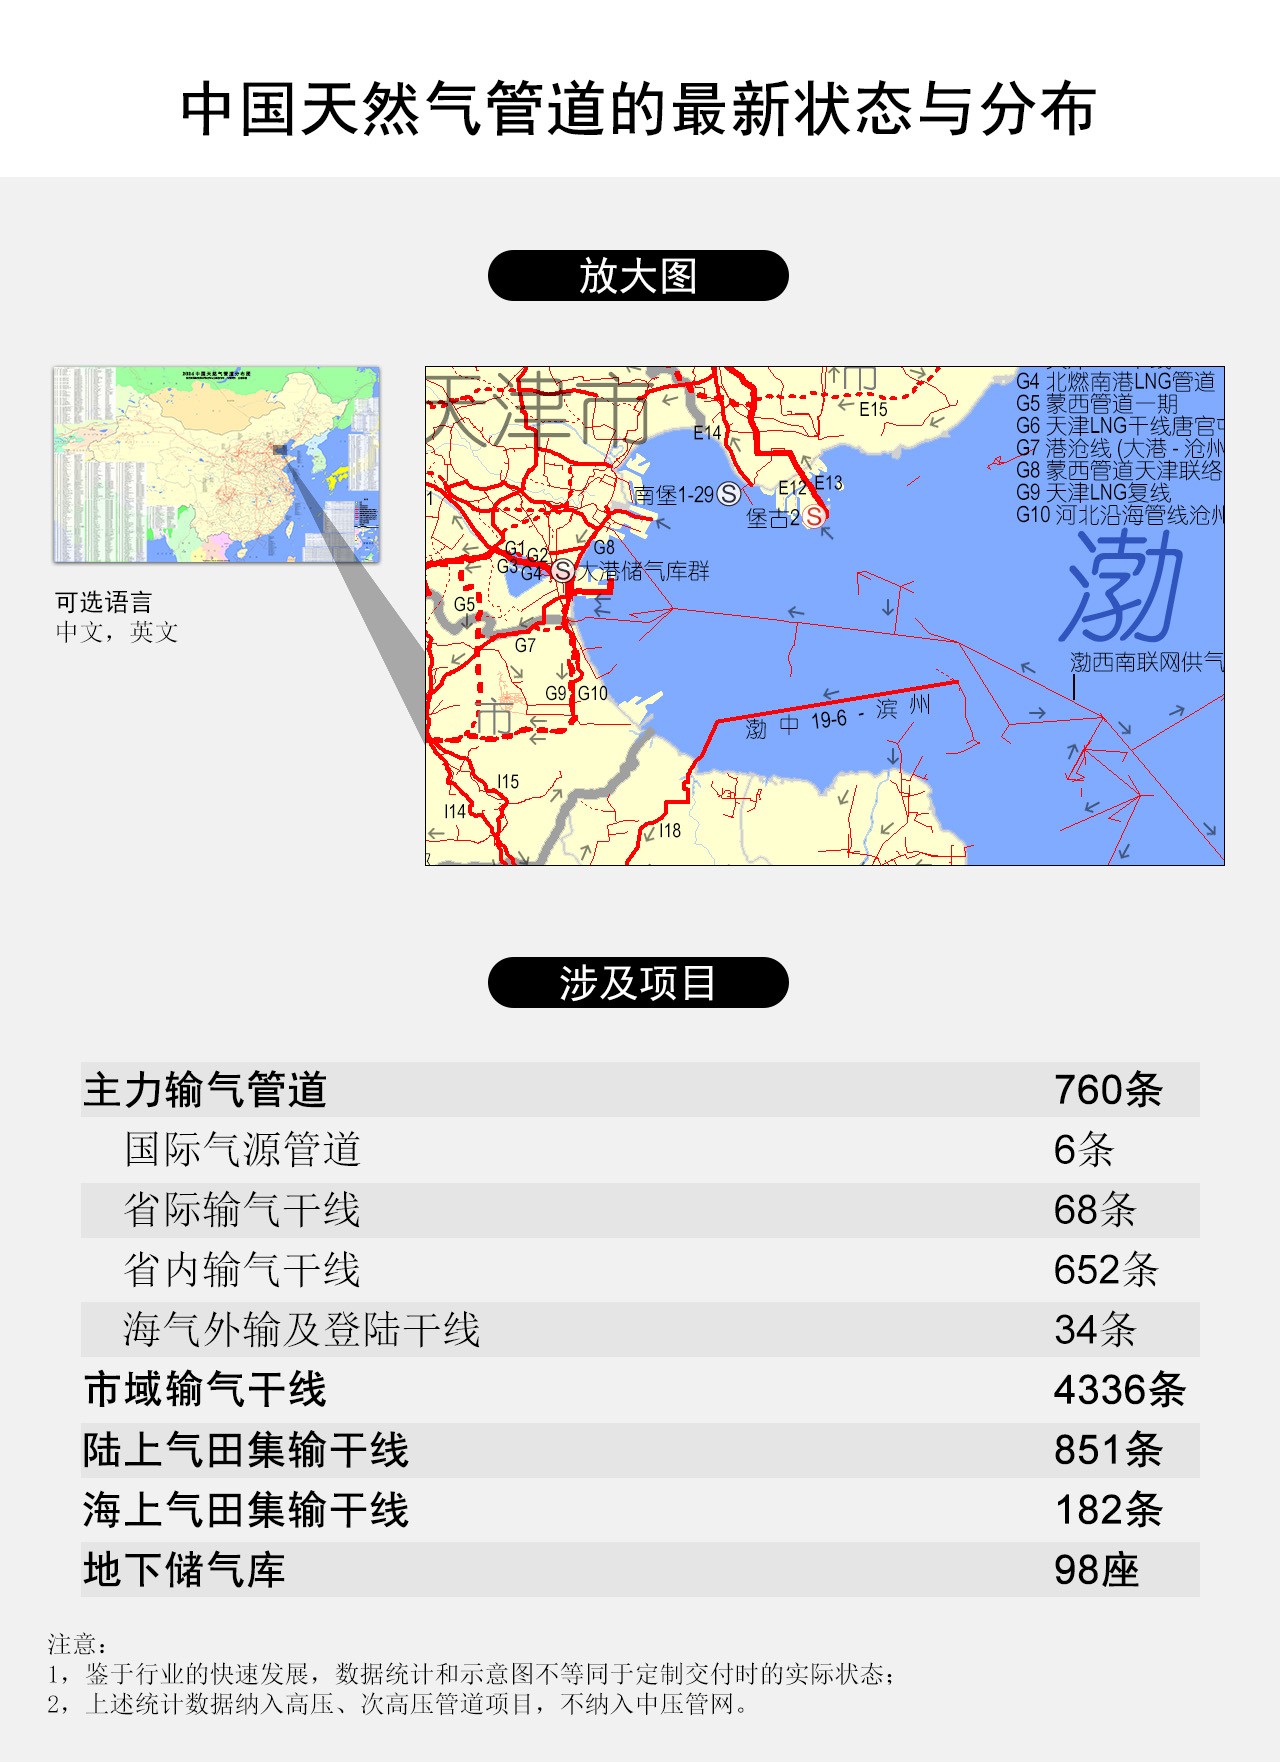 中国天然气管道的最新状态与分布